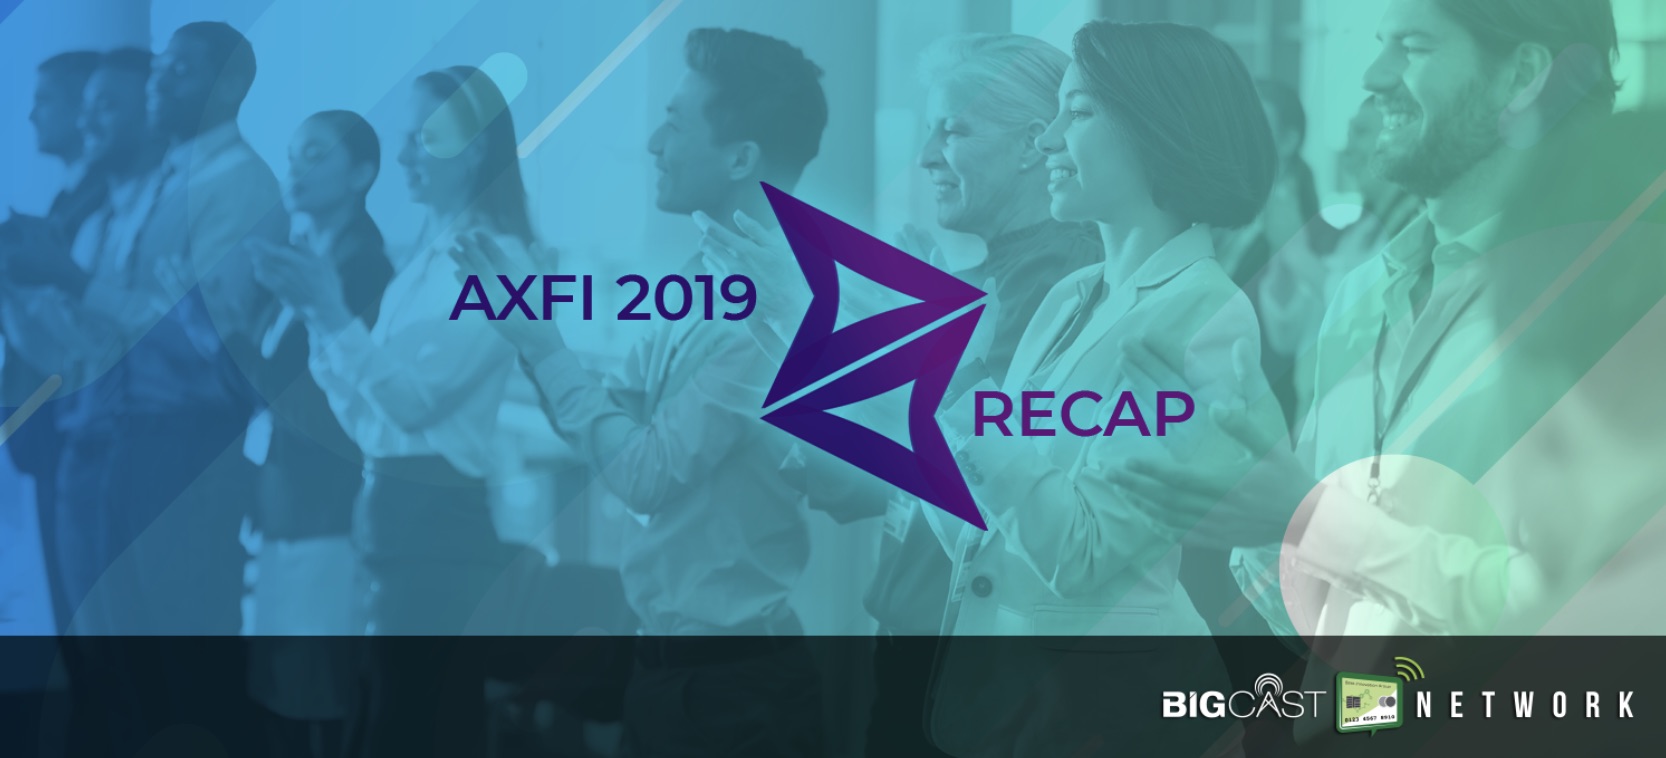 AXFI 2019 wrap up